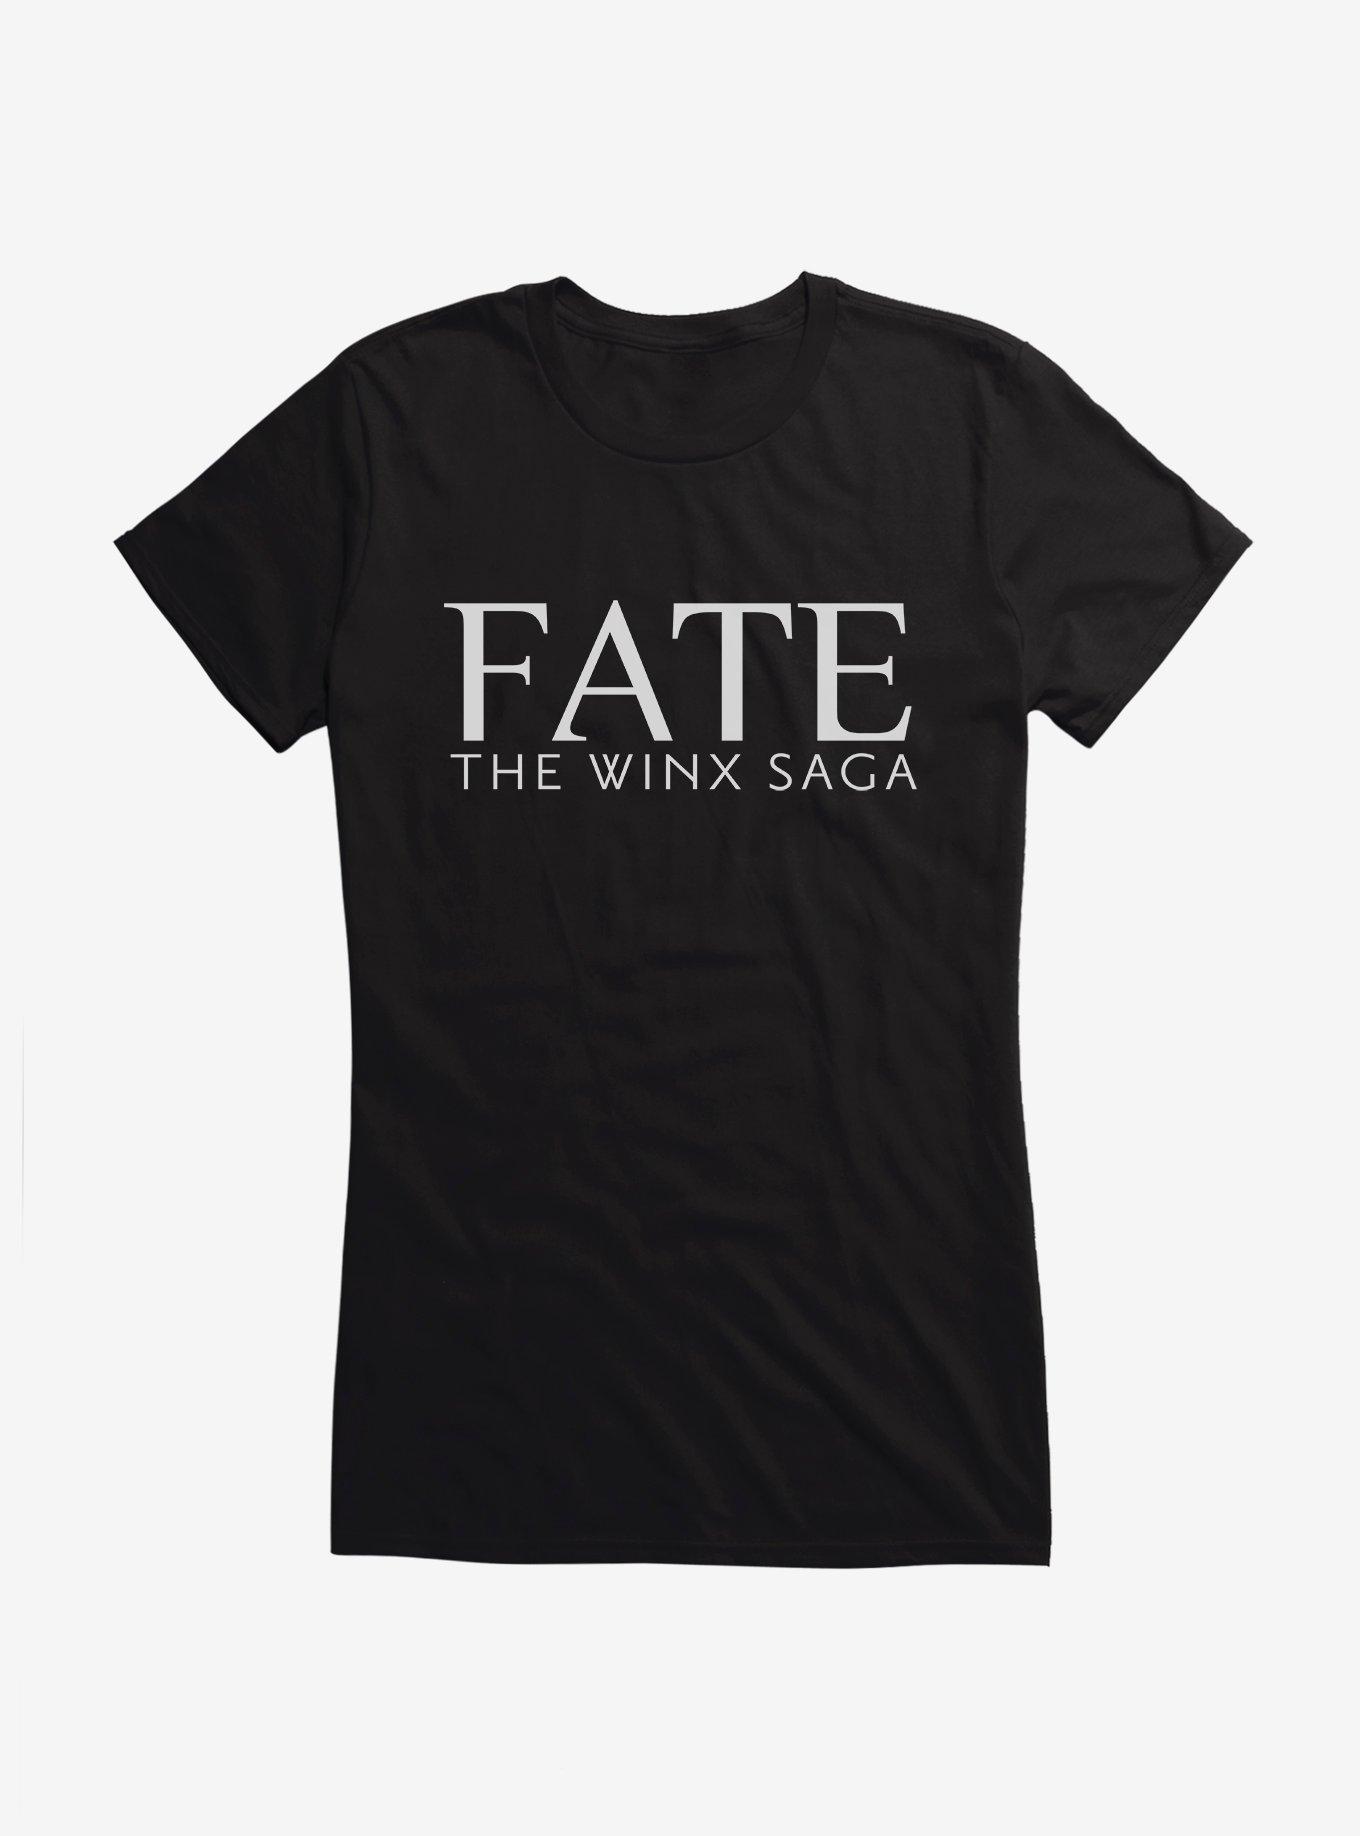 Fate: The Winx Saga Logo Girls T-Shirt